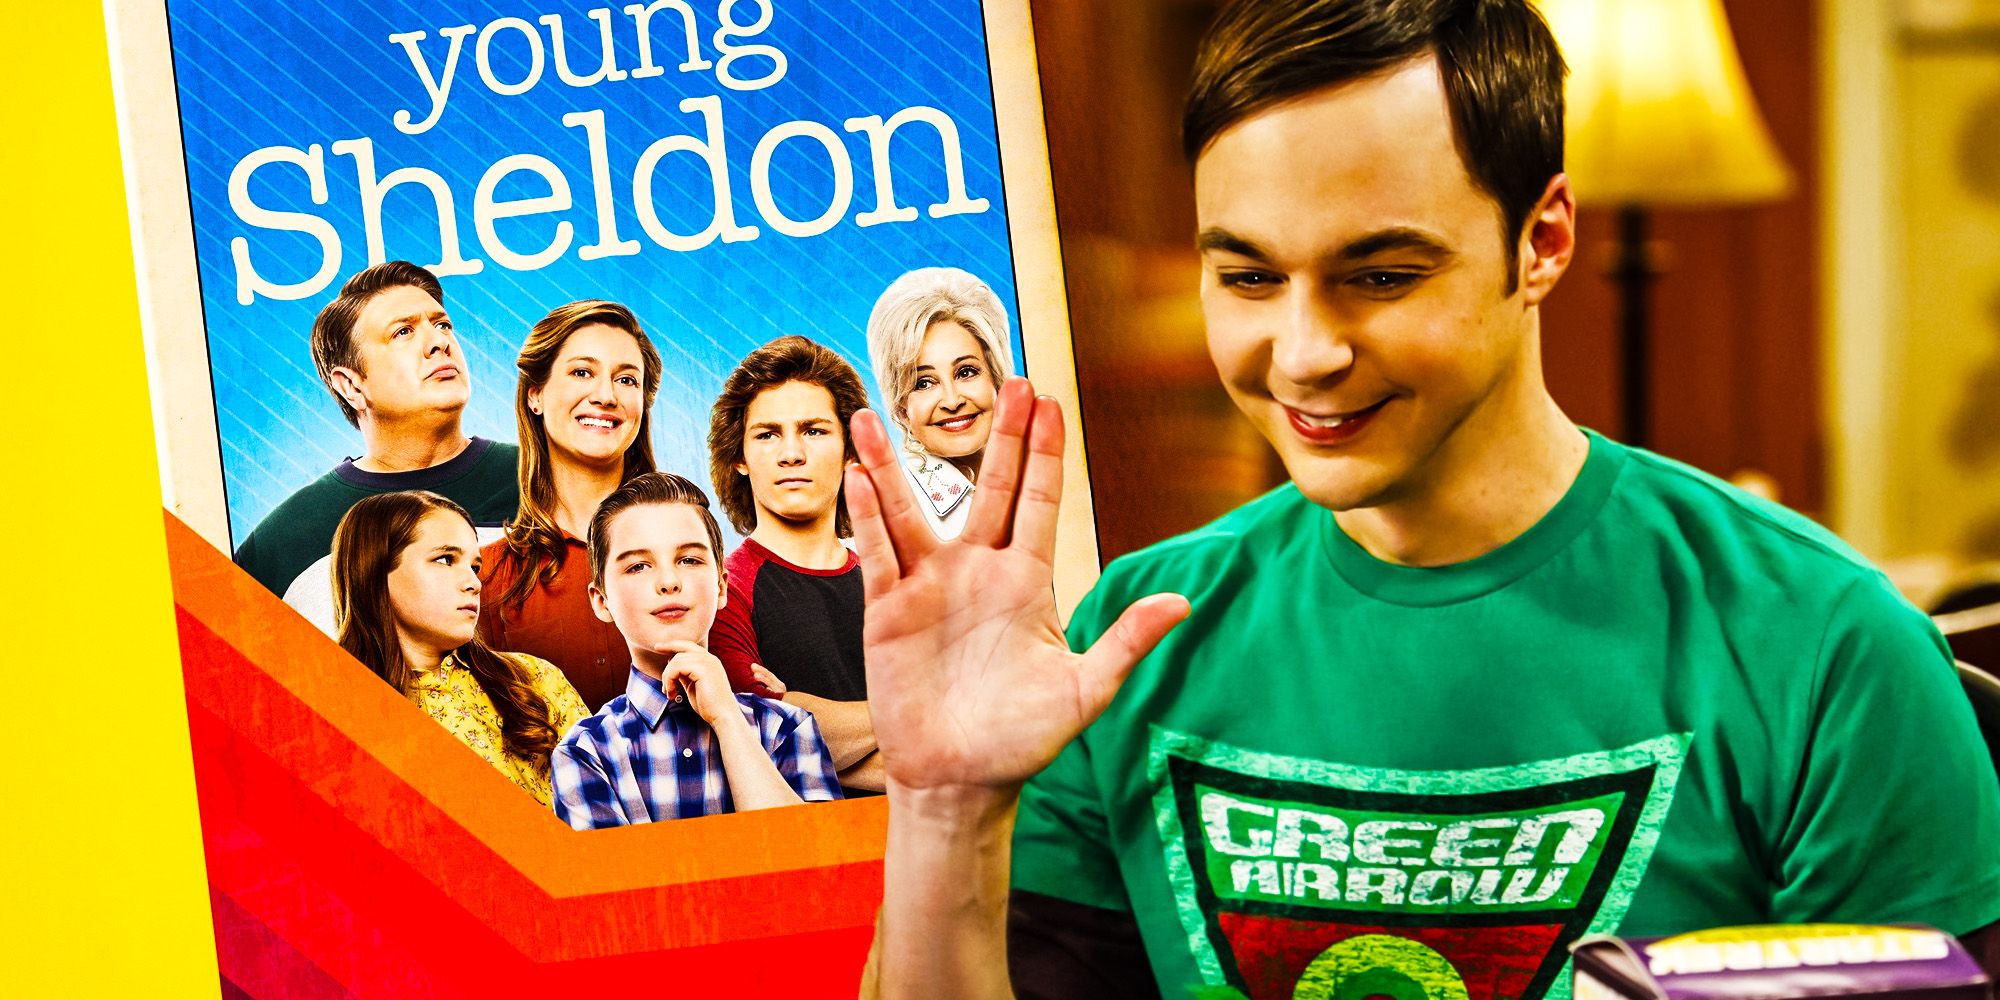 El joven Sheldon rompe su mayor conexión con la teoría del Big Bang